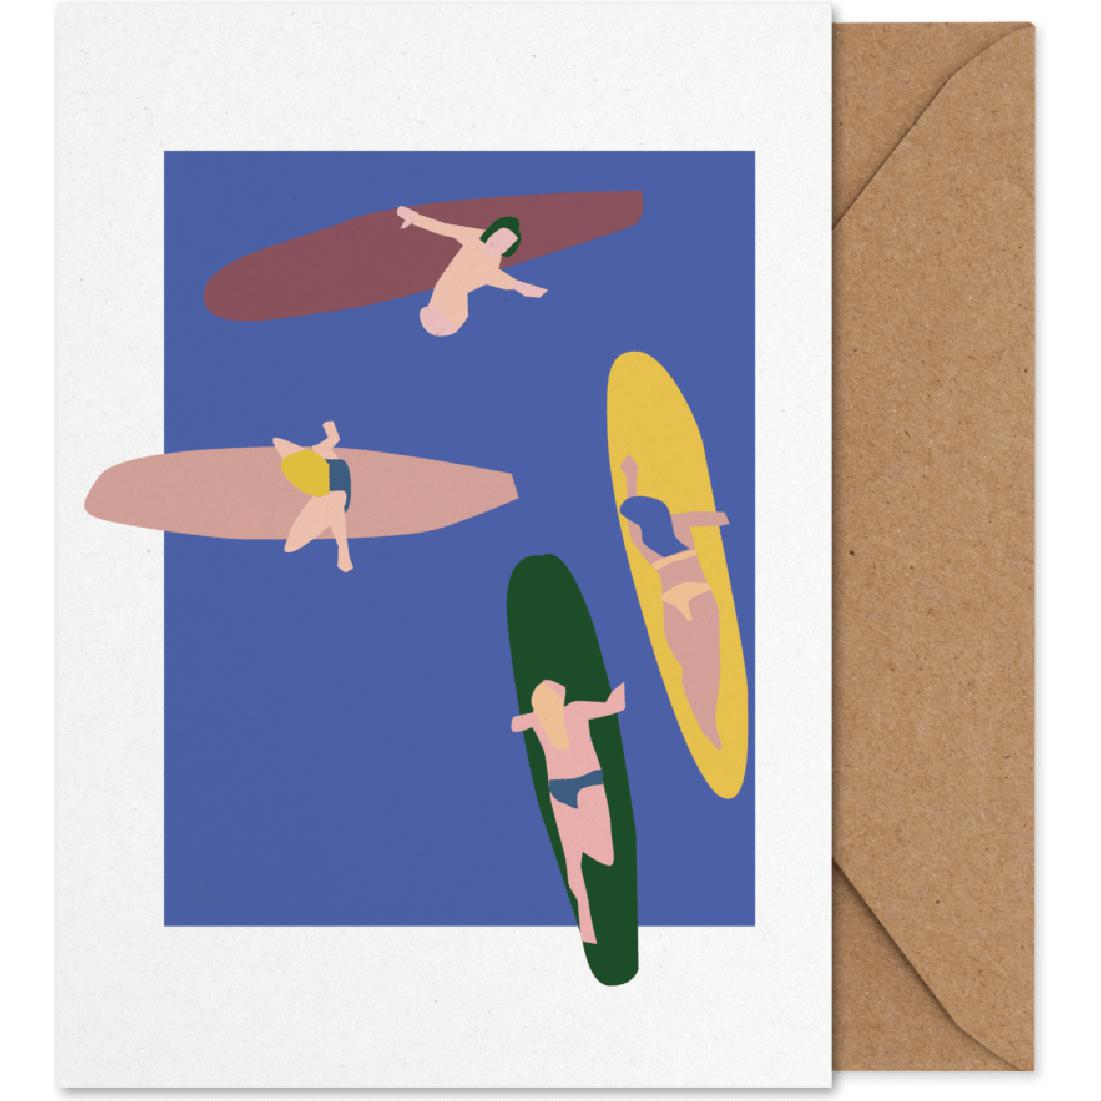 Karta umělecké karty v oblasti kolektivních surfařů papíru